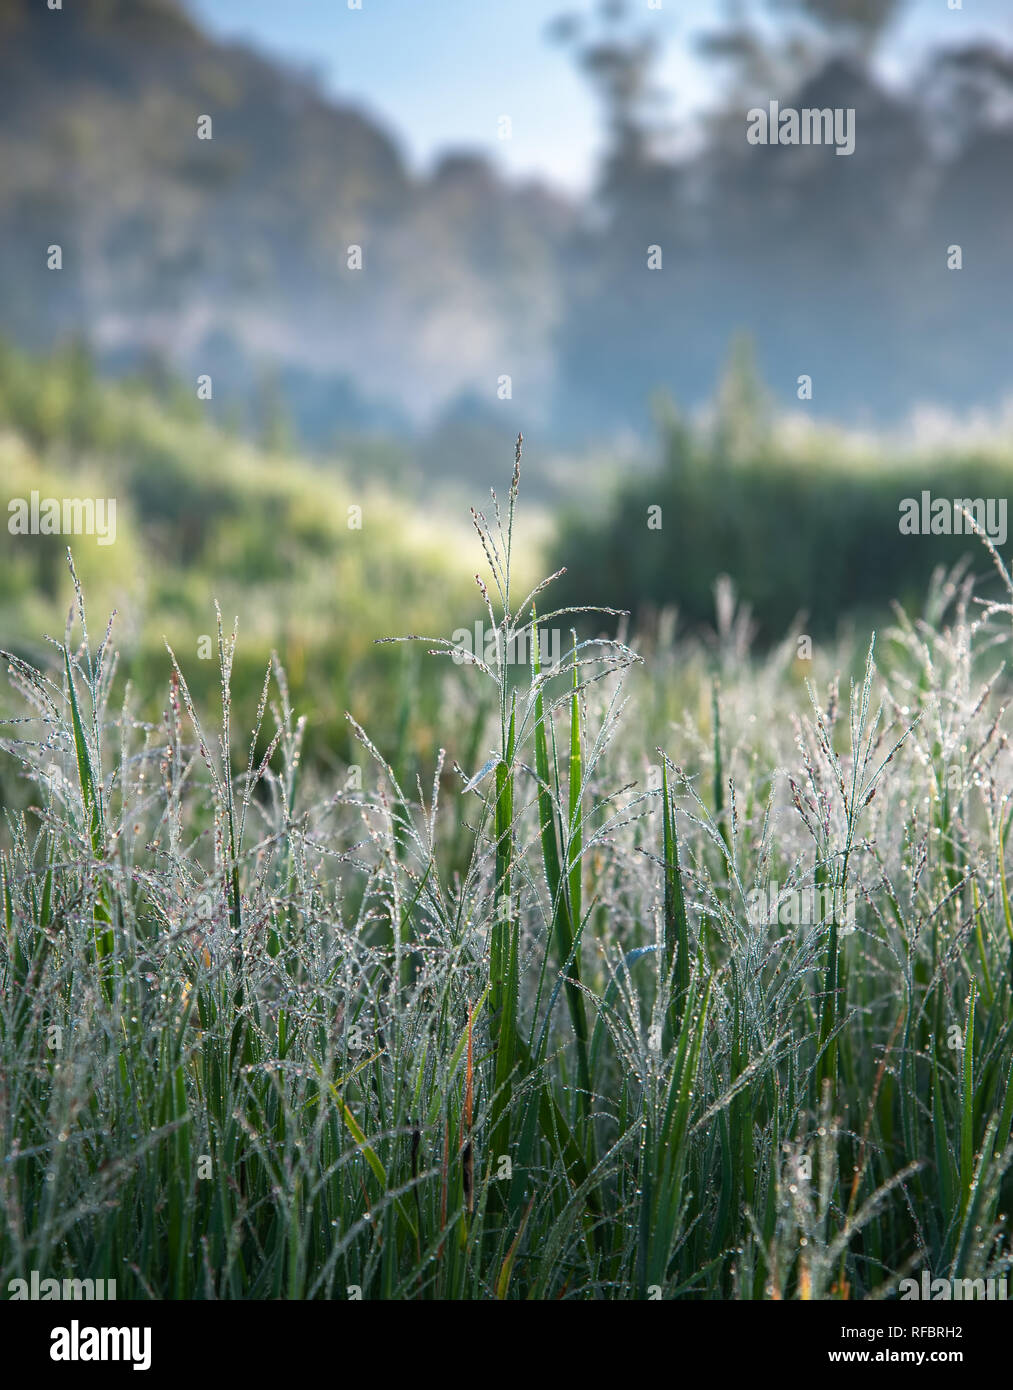 Nasses Gras mit Tau am Morgen mit Blur die Berge und grüne Wiese im Hintergrund. Selektive konzentrieren. Stockfoto